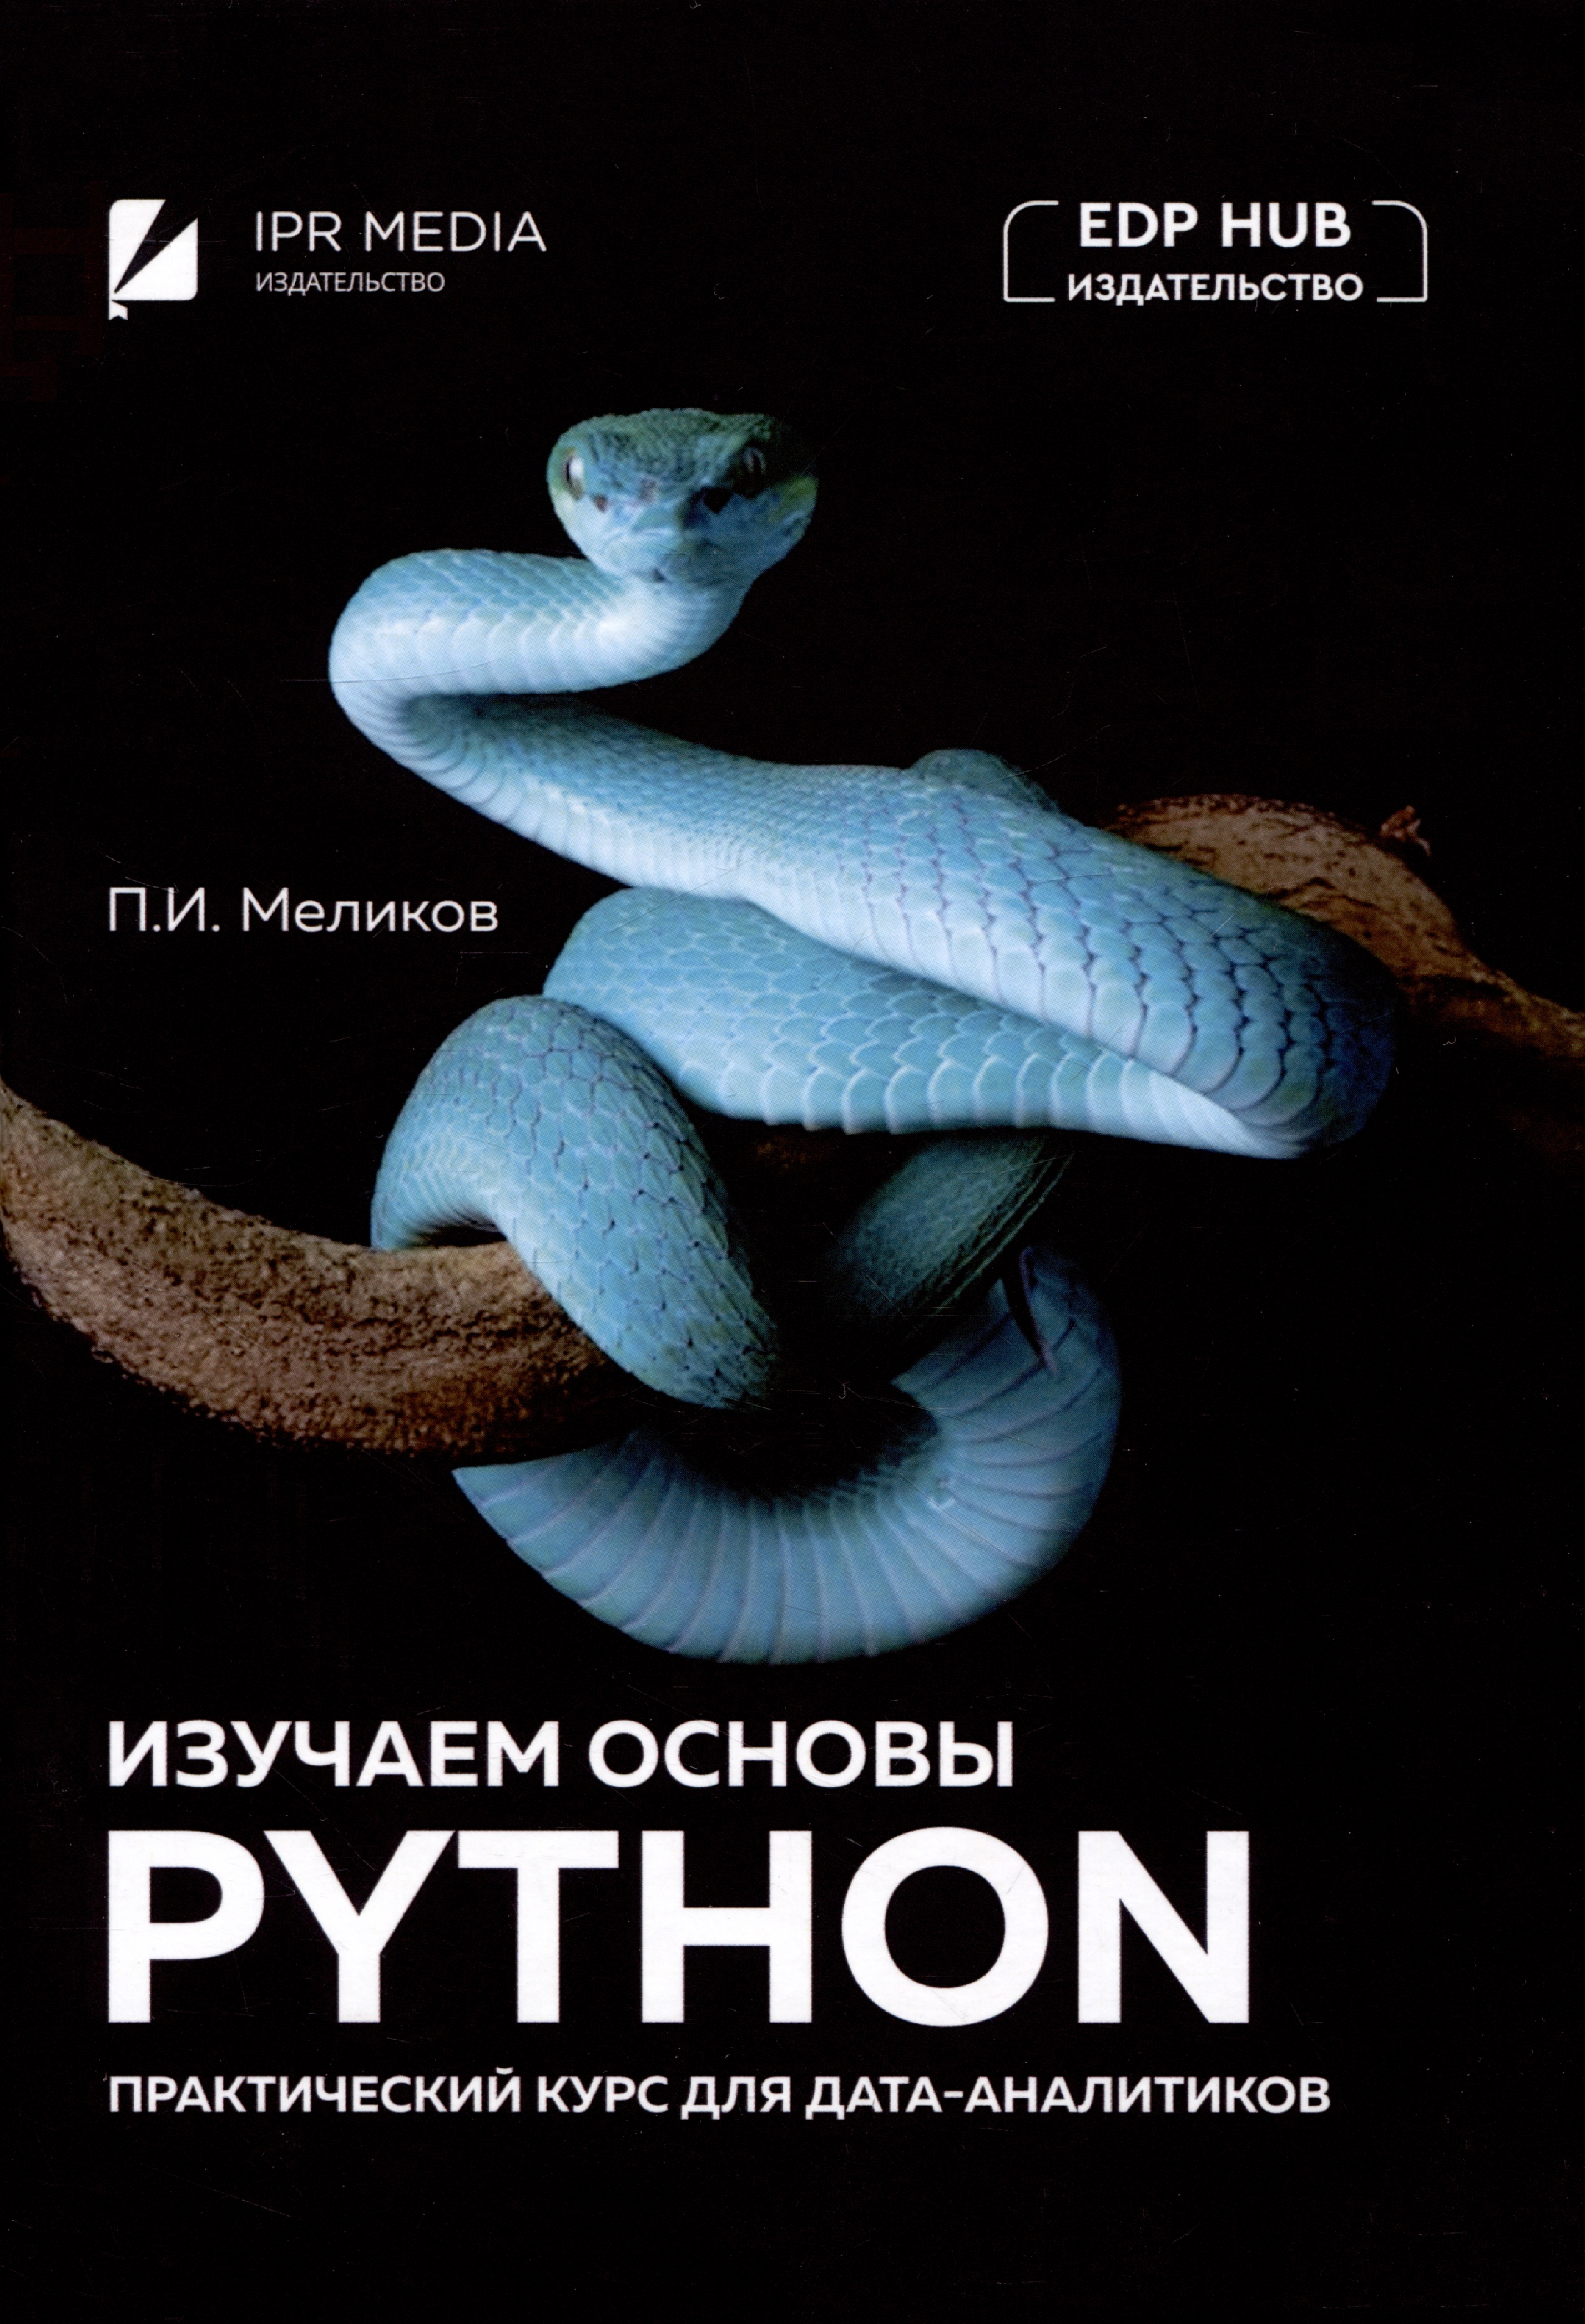 Меликов Павел Ильич Изучаем основы Python. Практический курс для дата-аналитиков плас дж вандер python для сложных задач наука о данных и машинное обучение